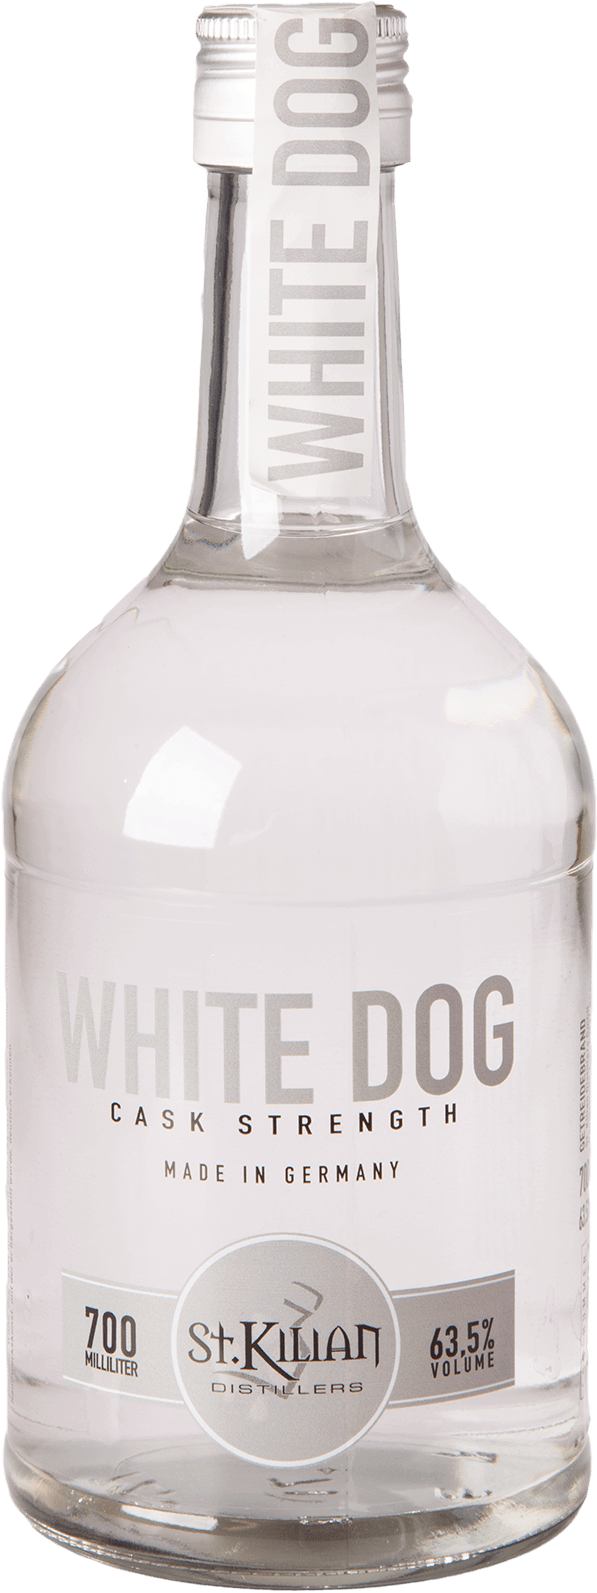 St. Kilian White Dog Cask Strength 63,5%